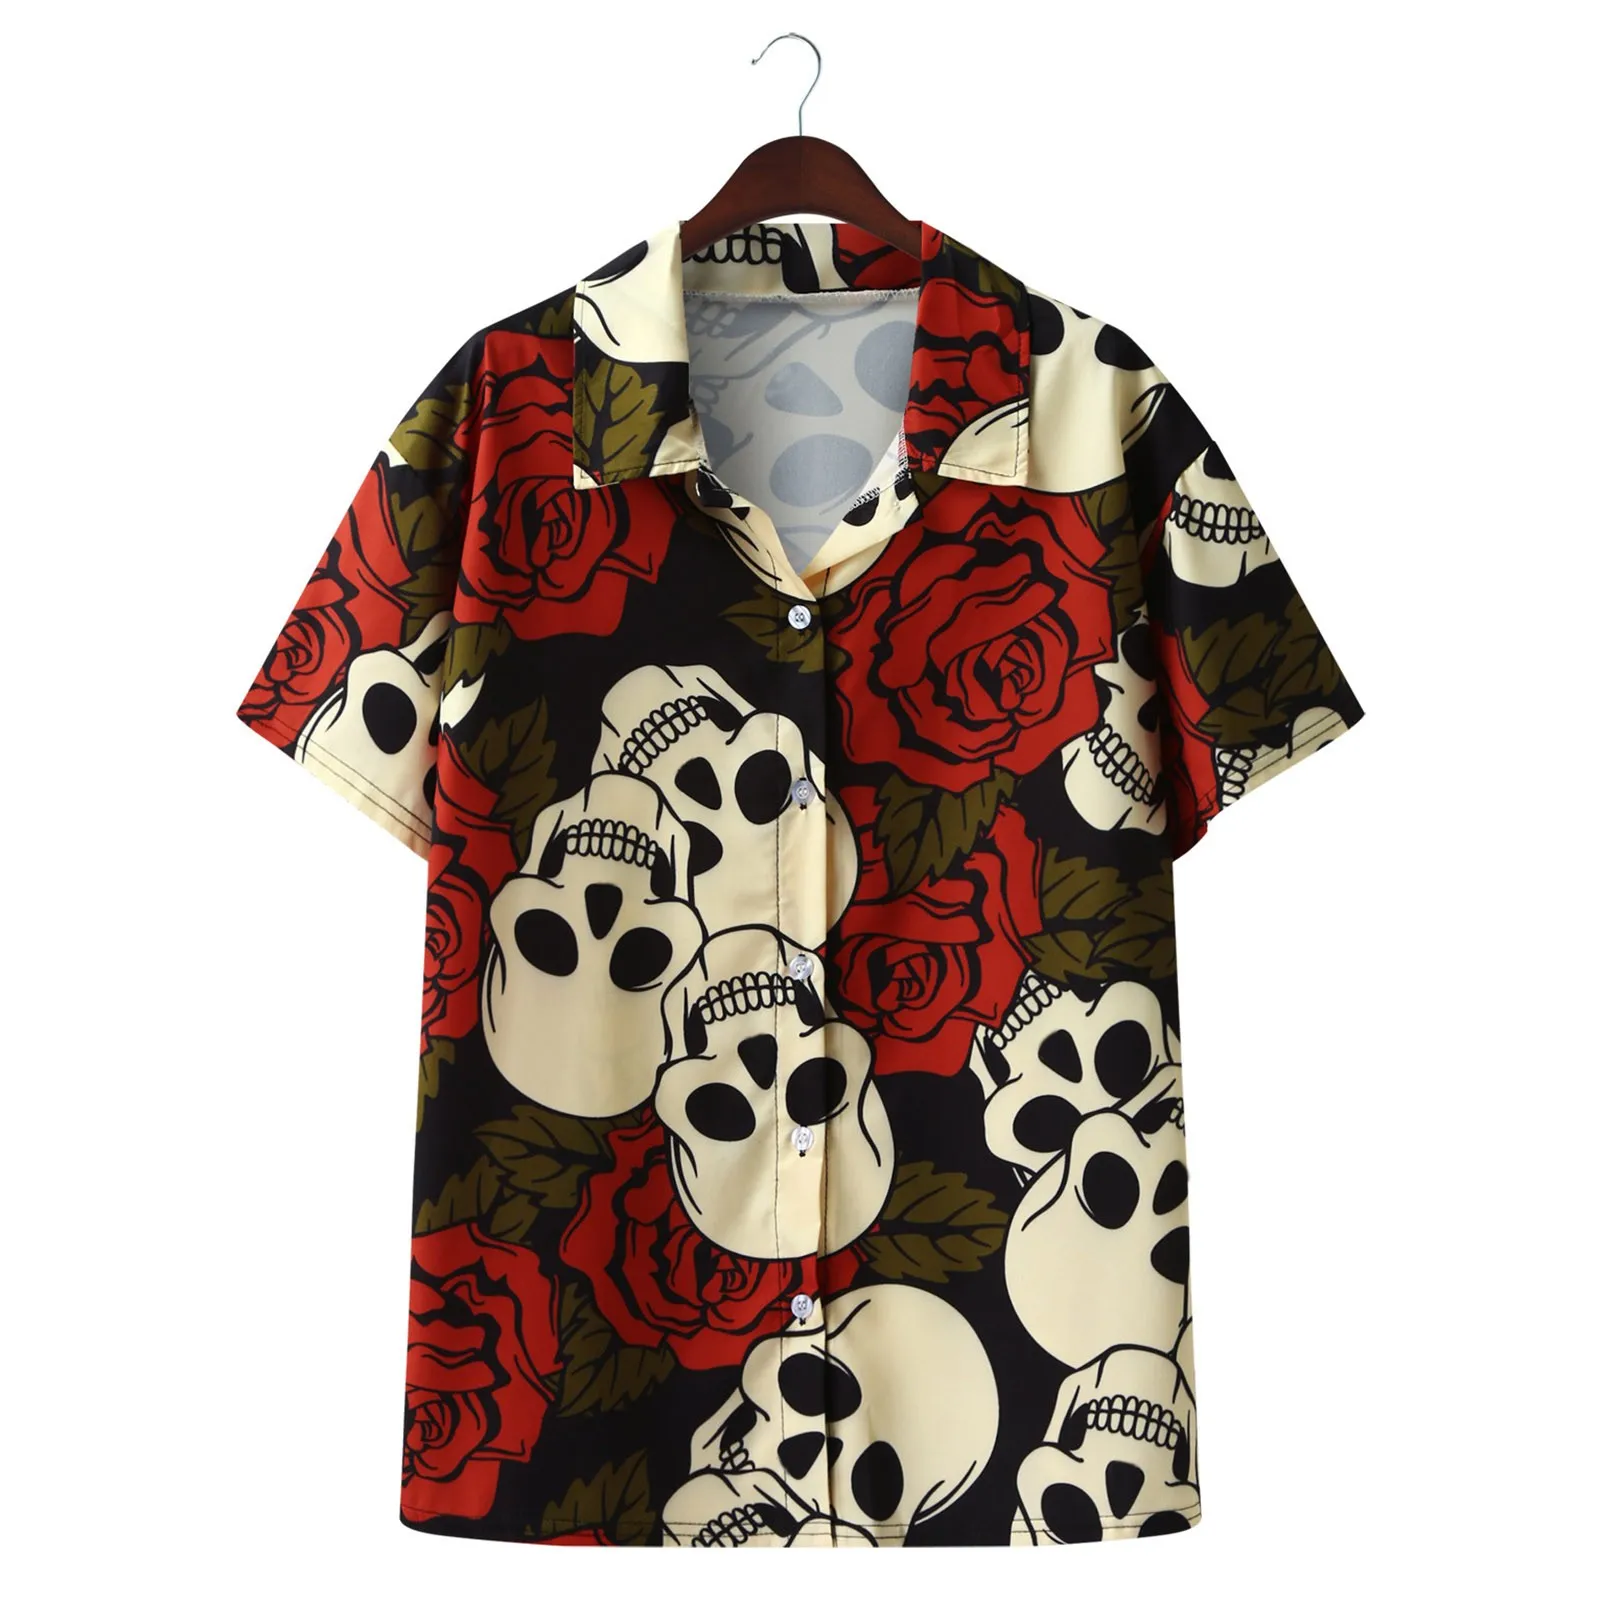 

Рубашка мужская с принтом черепа, короткий рукав, V-образный вырез, Повседневная пляжная блуза с принтом скелета, гавайская блузка, одежда дл...